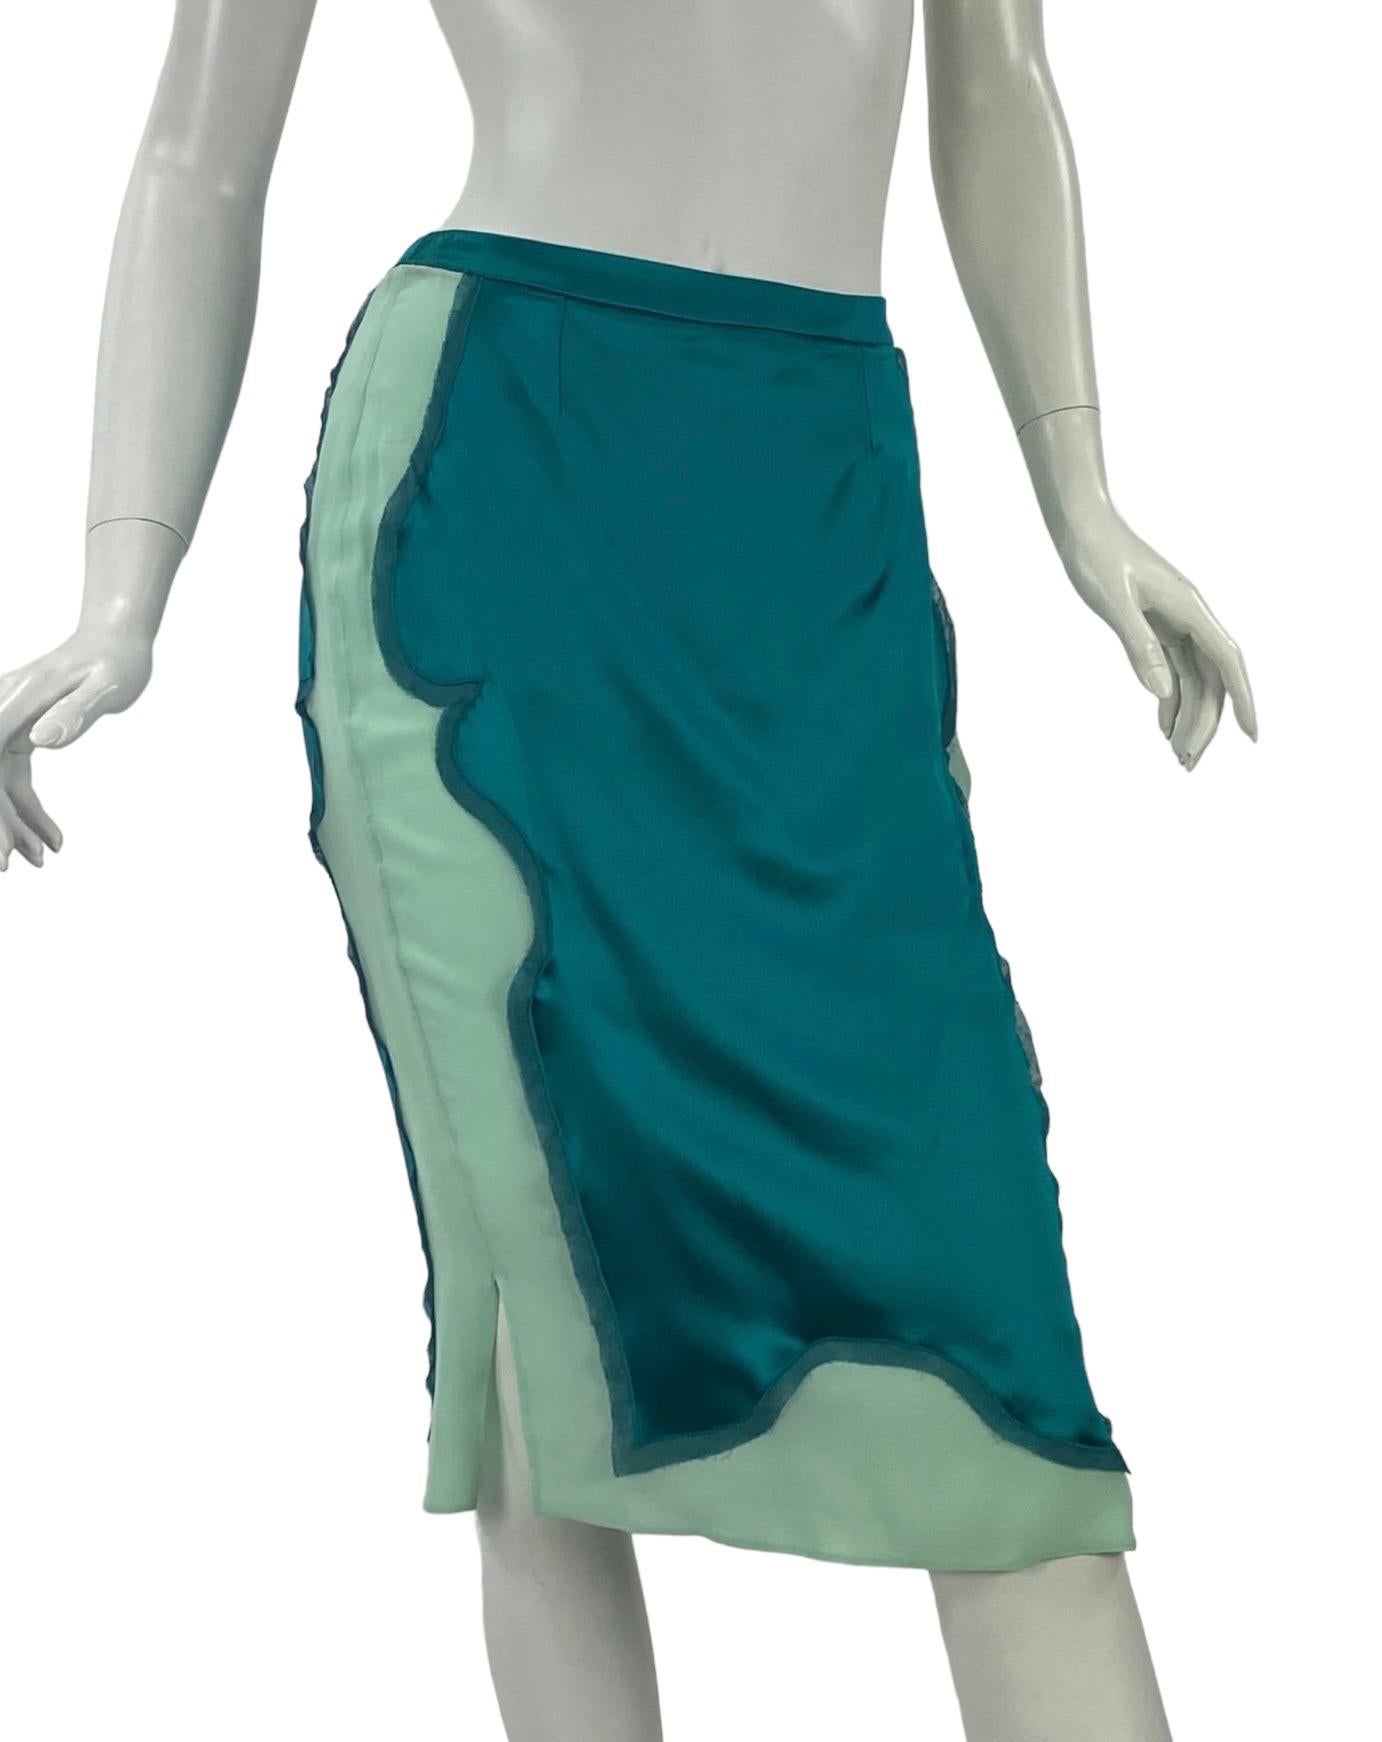 Tom Ford for Yves Saint Laurent Chinoiserie Silk Skirt
F/W 2004
Size: FR - 38, US - 6
Waist 28